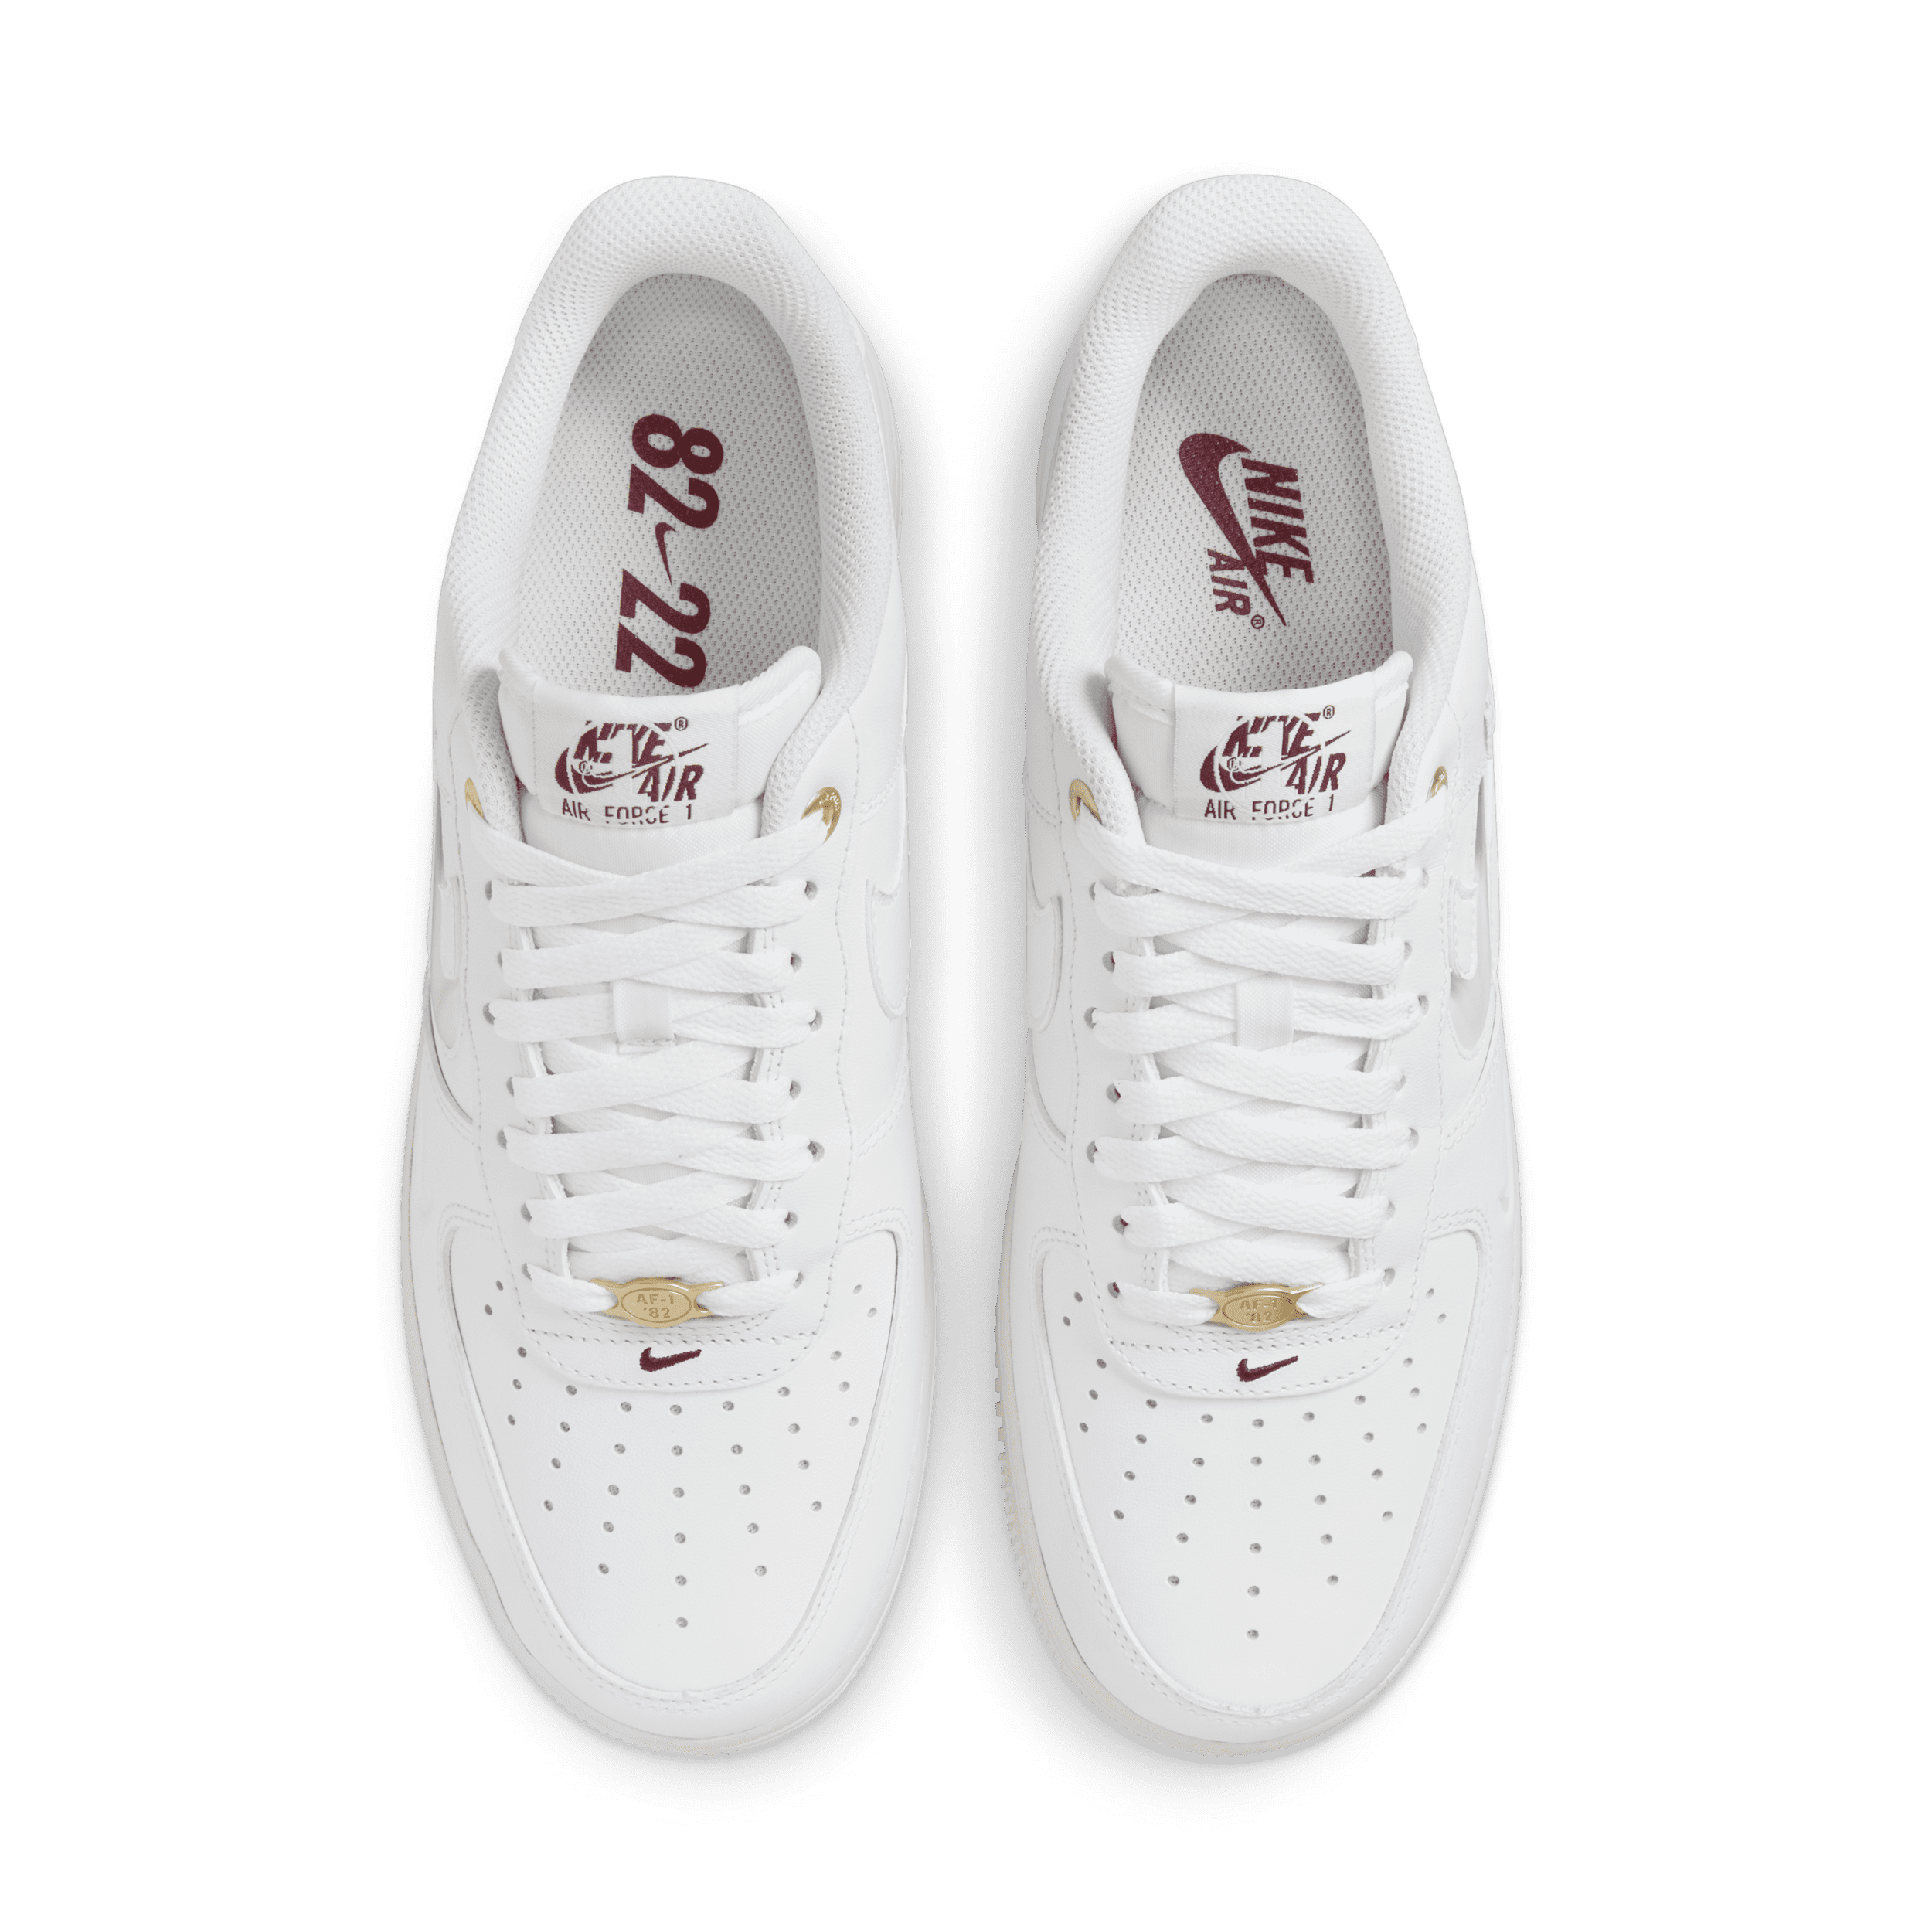 Nike Air Force 1 '07 Premium Herrenschuhe - Weiß